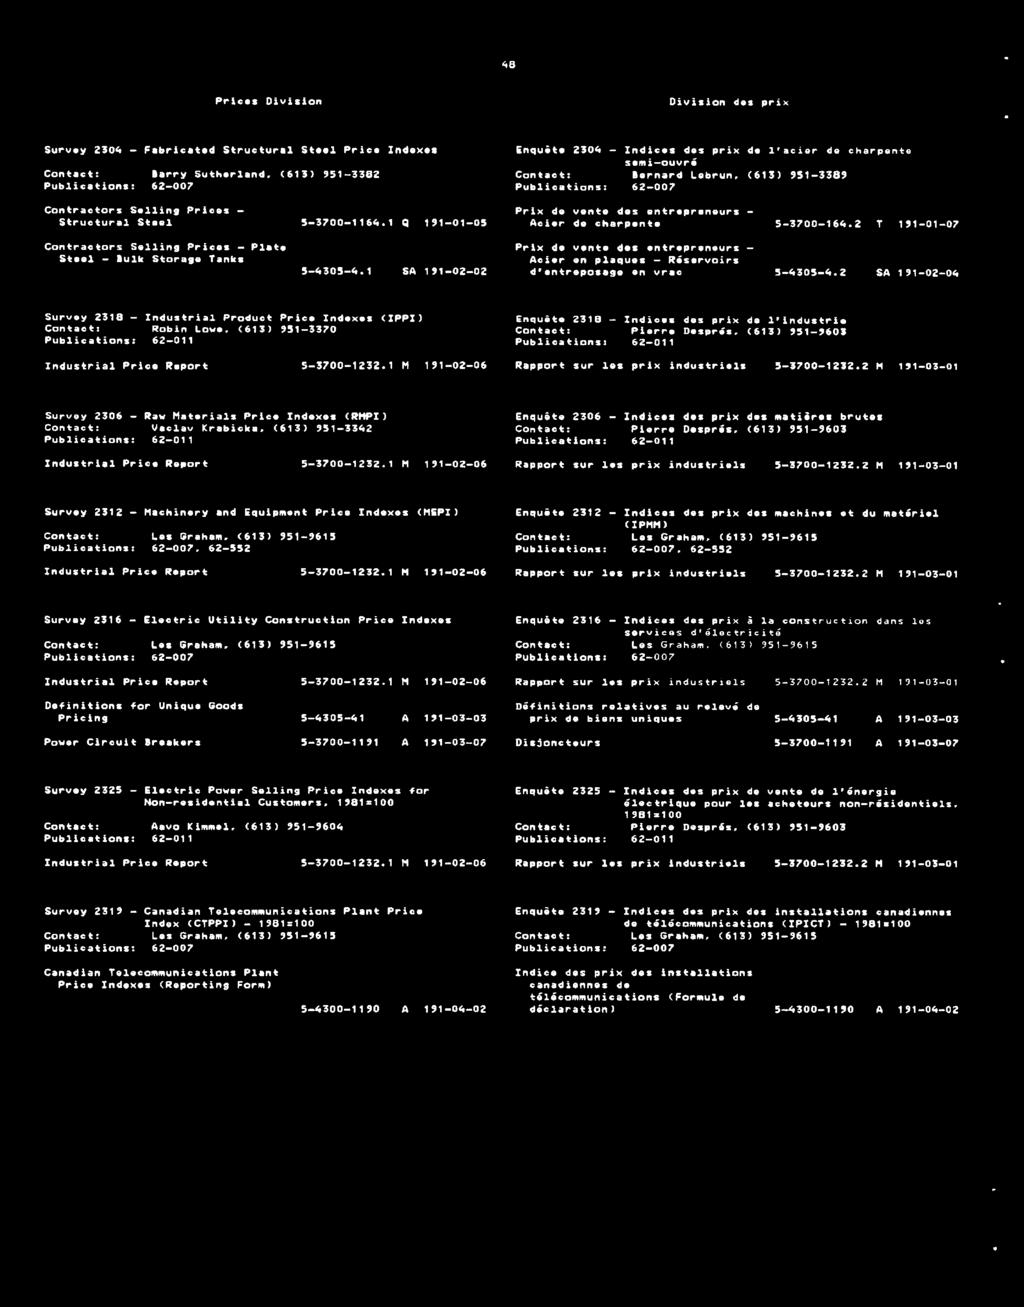 2304 - Indices des prix de l'acier de charpento semi-ouvrã Contact: Bernard Lobrun, (613) 951-3389 Publications: 62-007 Prix do vente des entrepreneurs - Acier de charpente 5-3700-164.